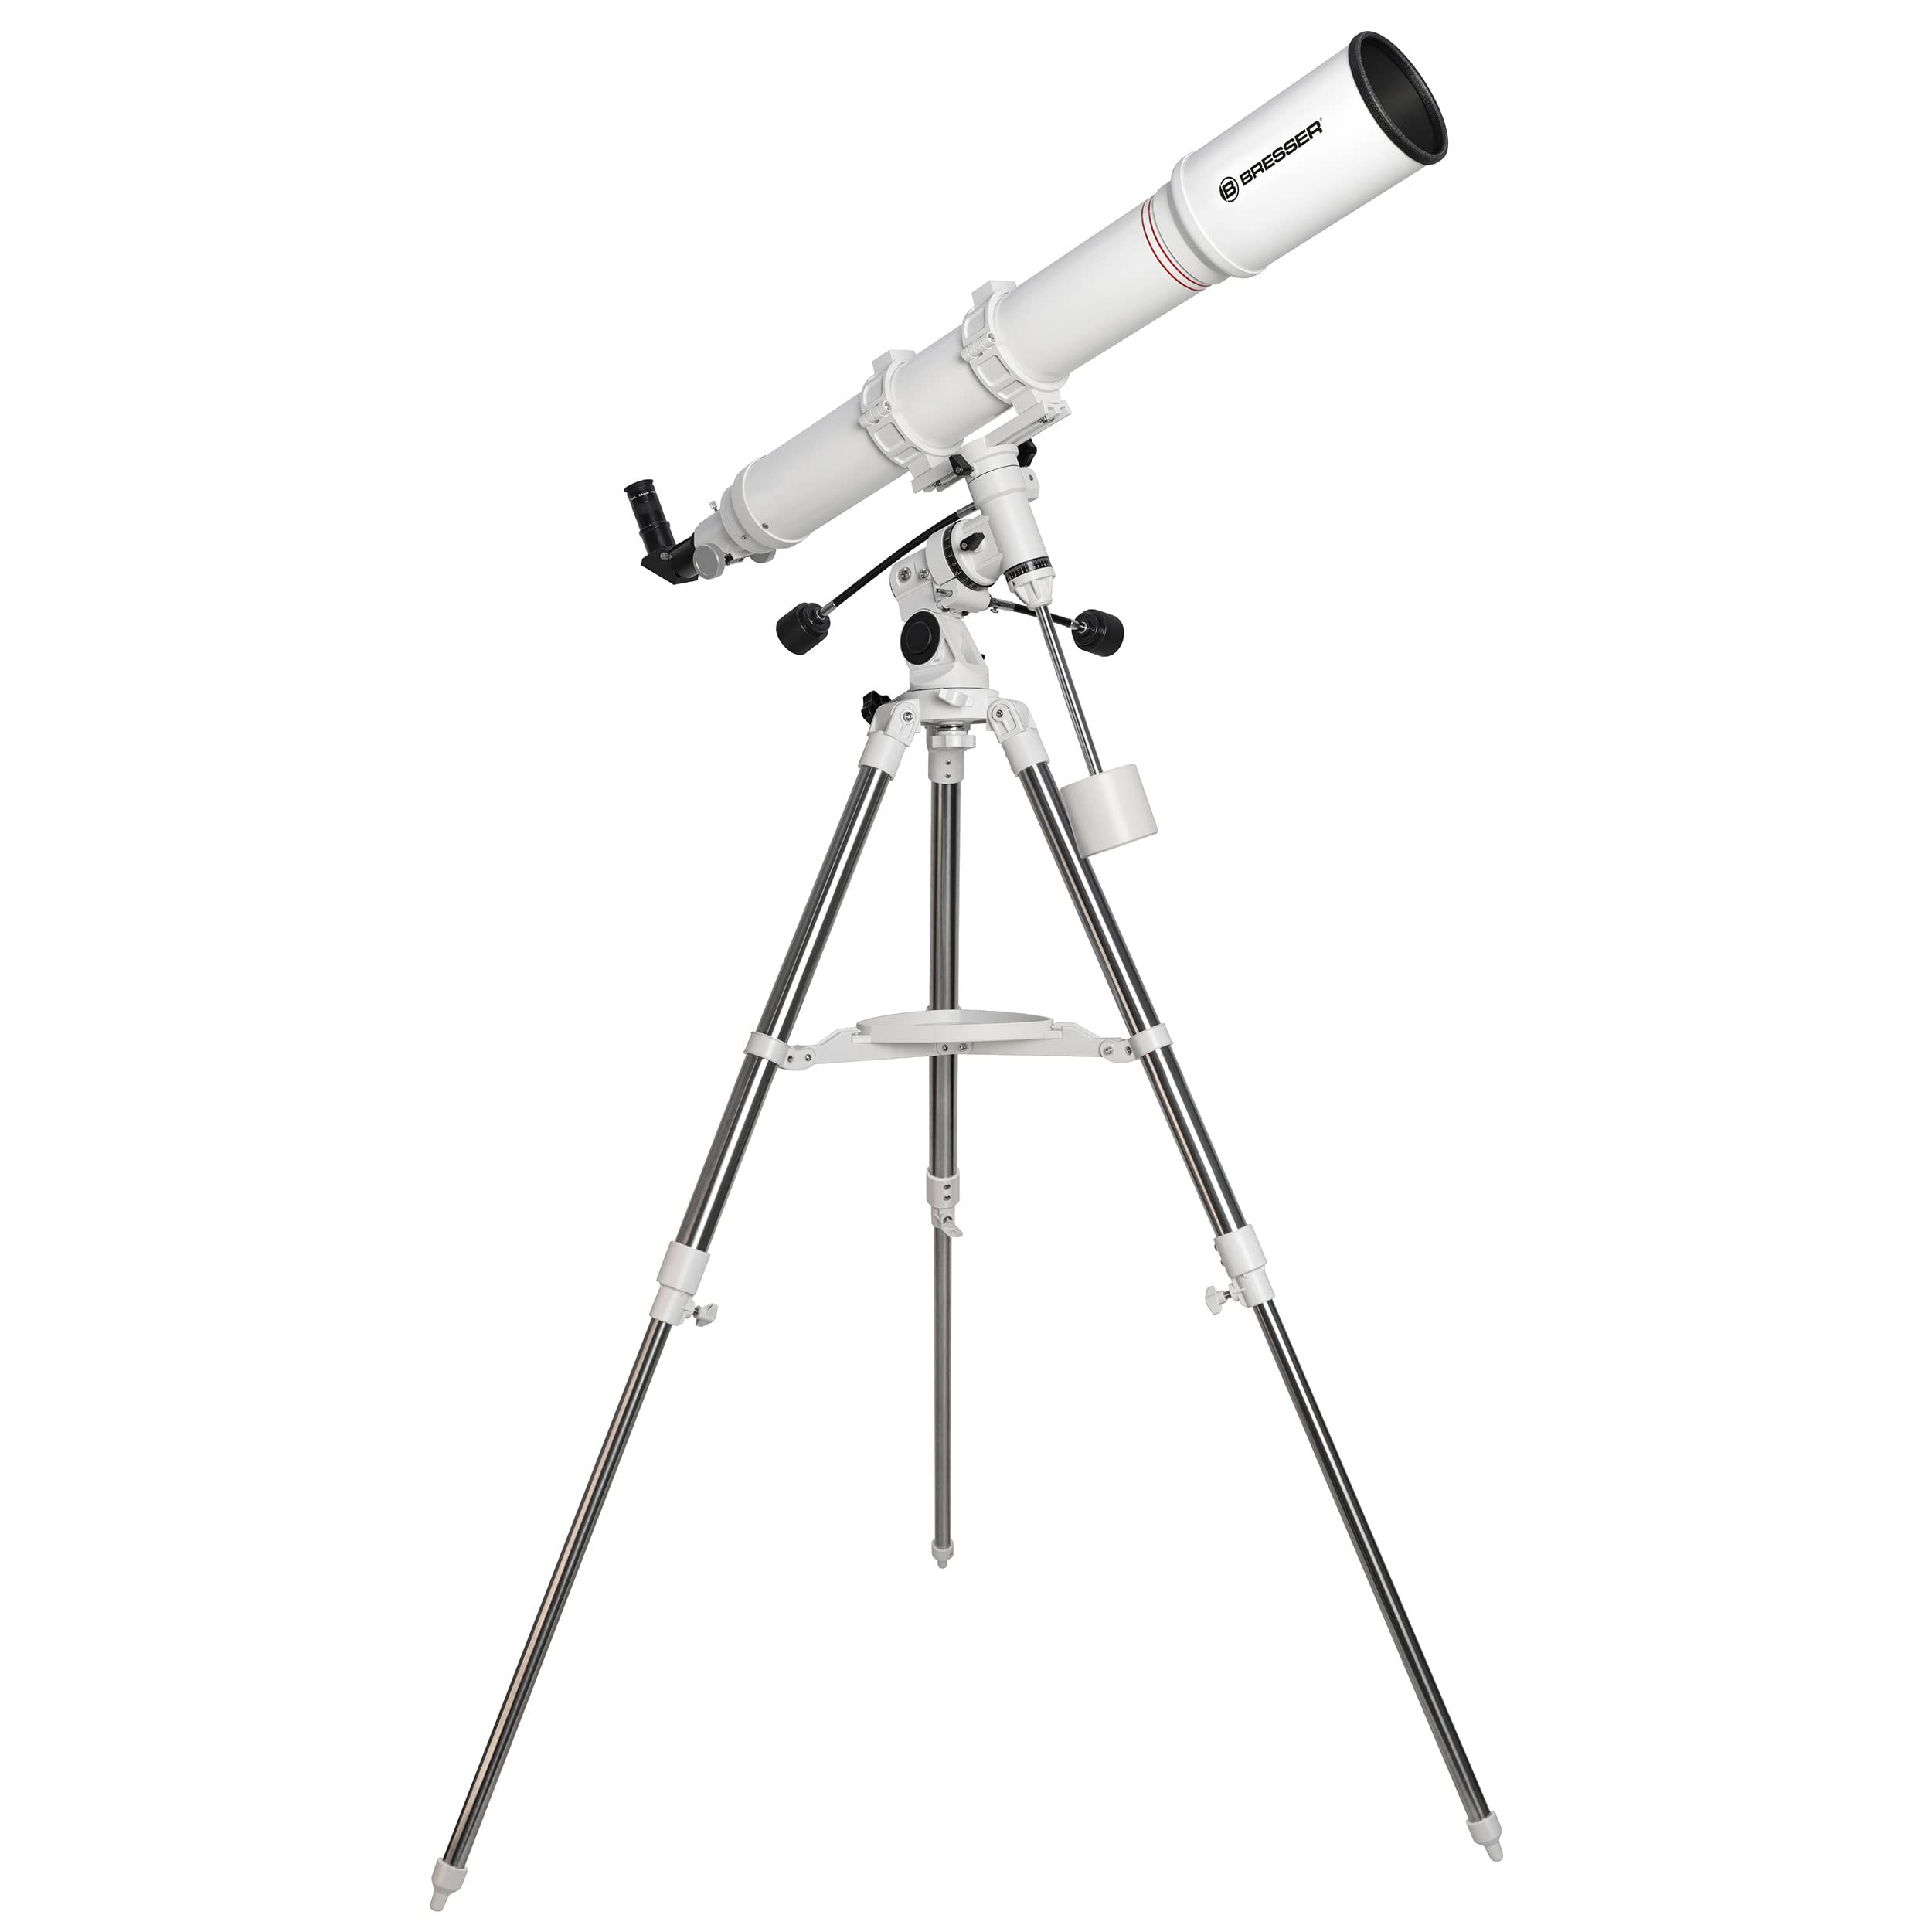 Bresser Teleskop First Light für Erwachsene Einsteiger und Fortgeschrittene, achromatisches 102/1000-Refraktor-Teleskop (f/9,8) mit Montierung und Stativ